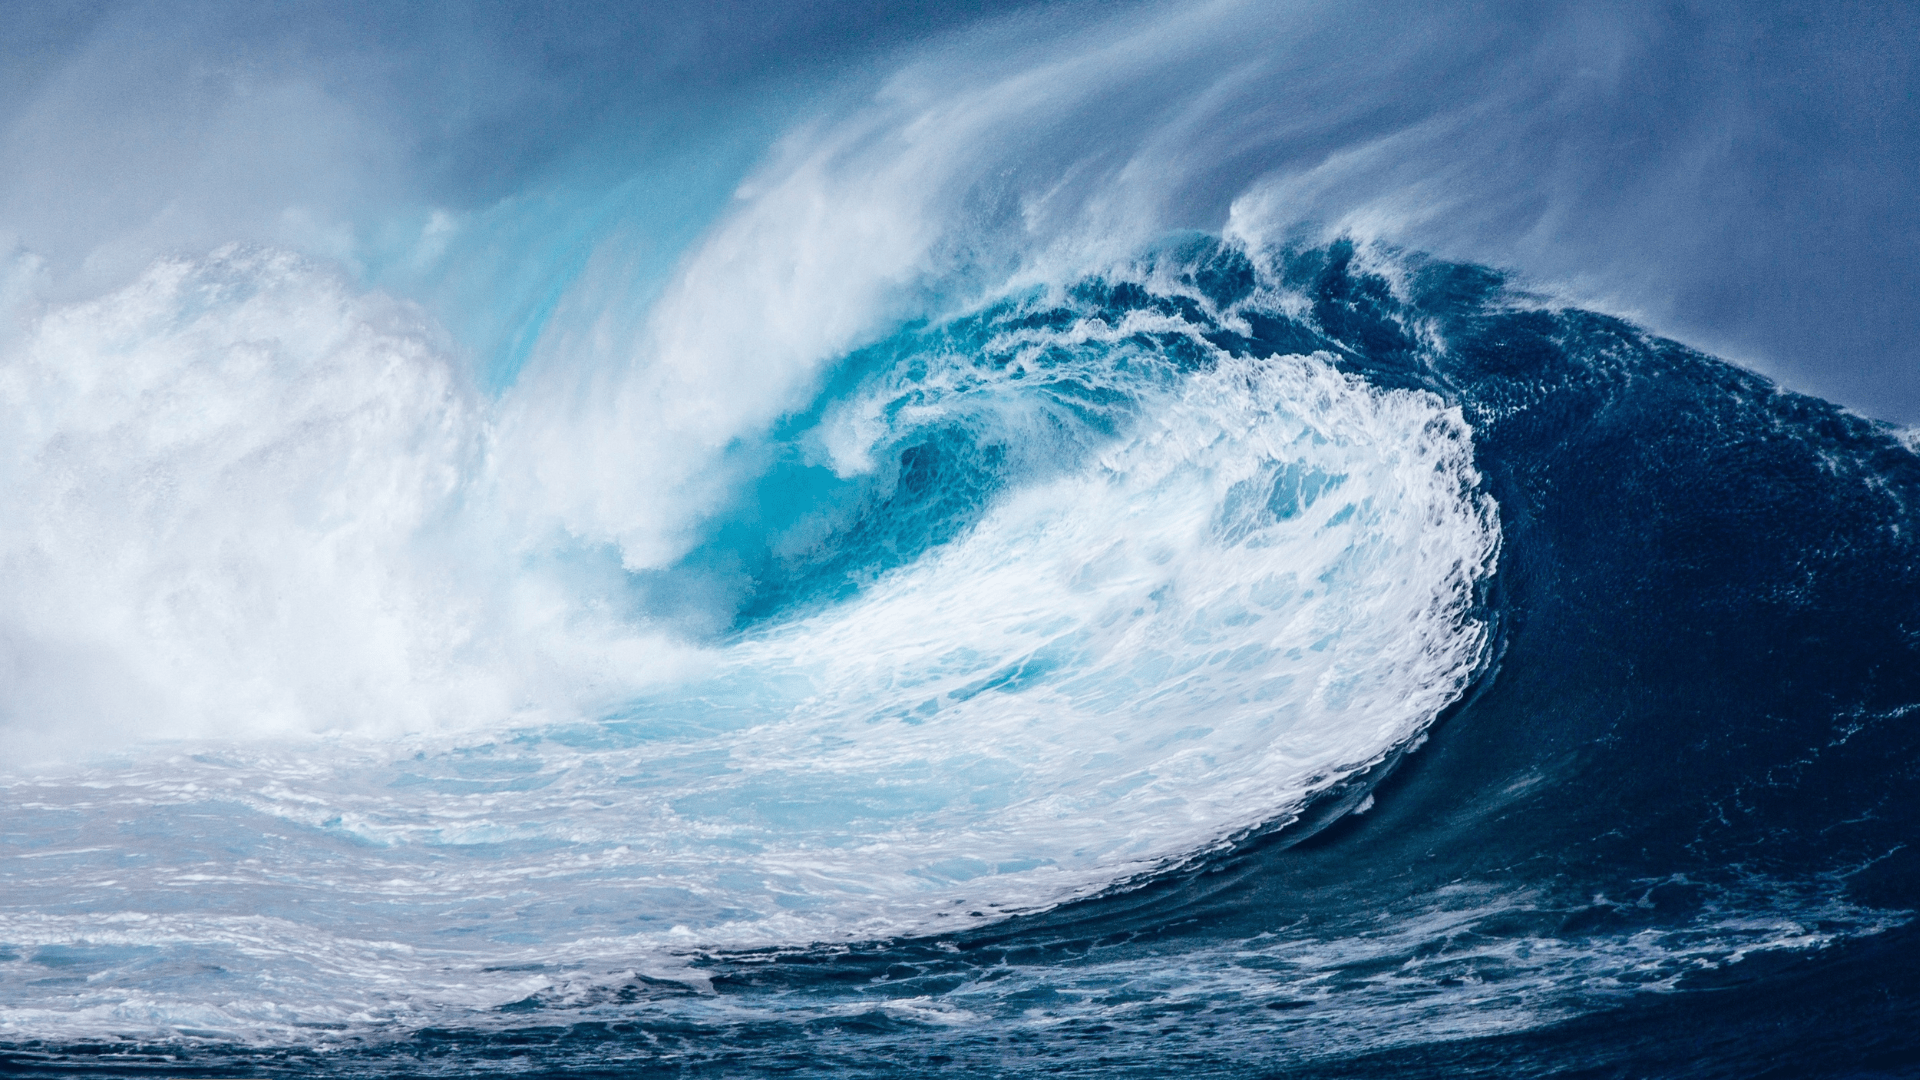 “Dame Señor la perseverancia de las olas del mar, que hacen de cada retroceso un punto de partida para un nuevo avance”